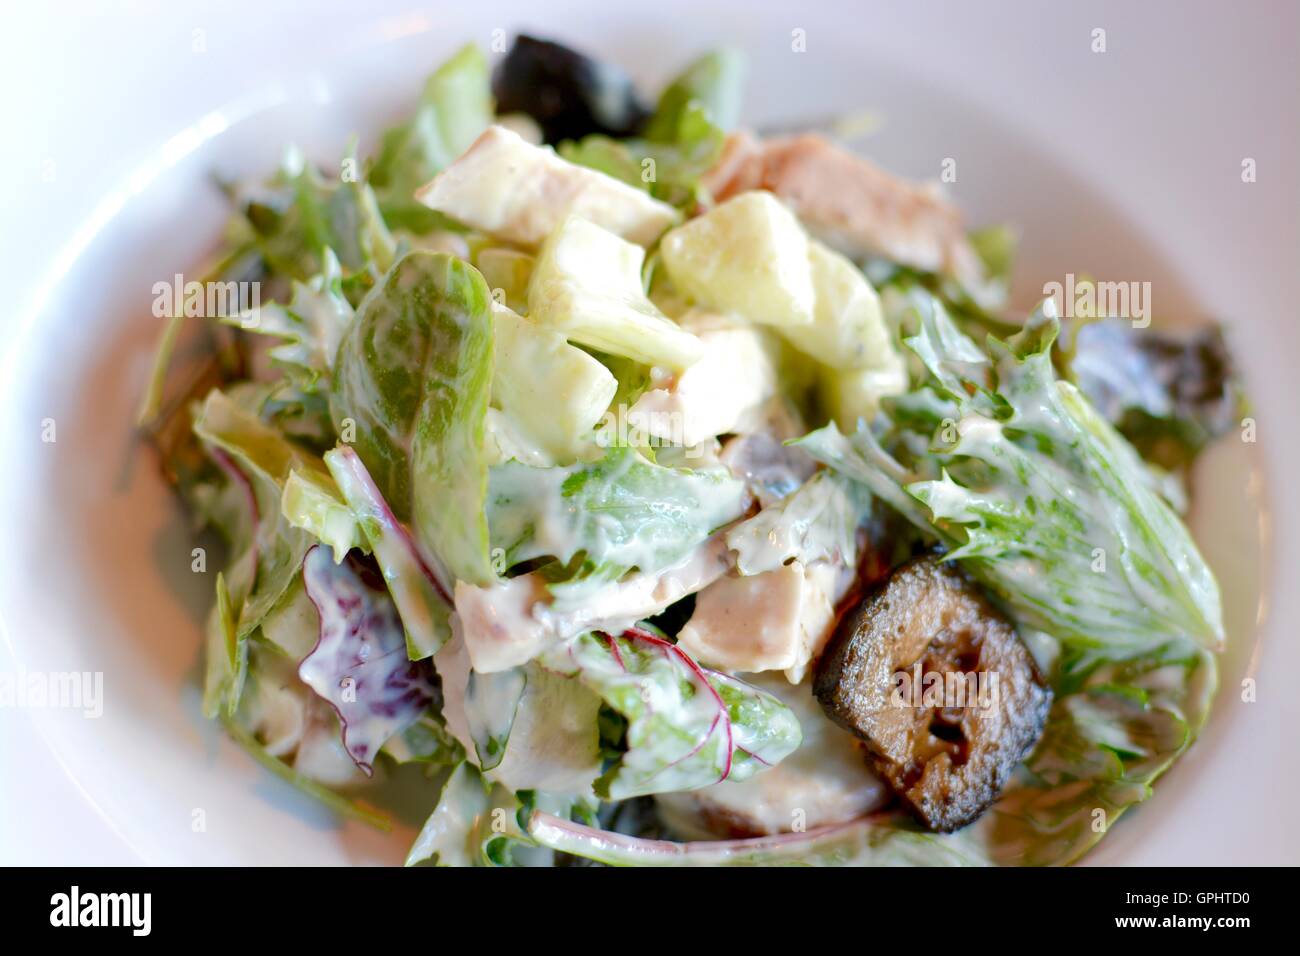 Salade Waldorf avec laitue, pomme, noix marinées dans une vinaigrette crémeuse Banque D'Images